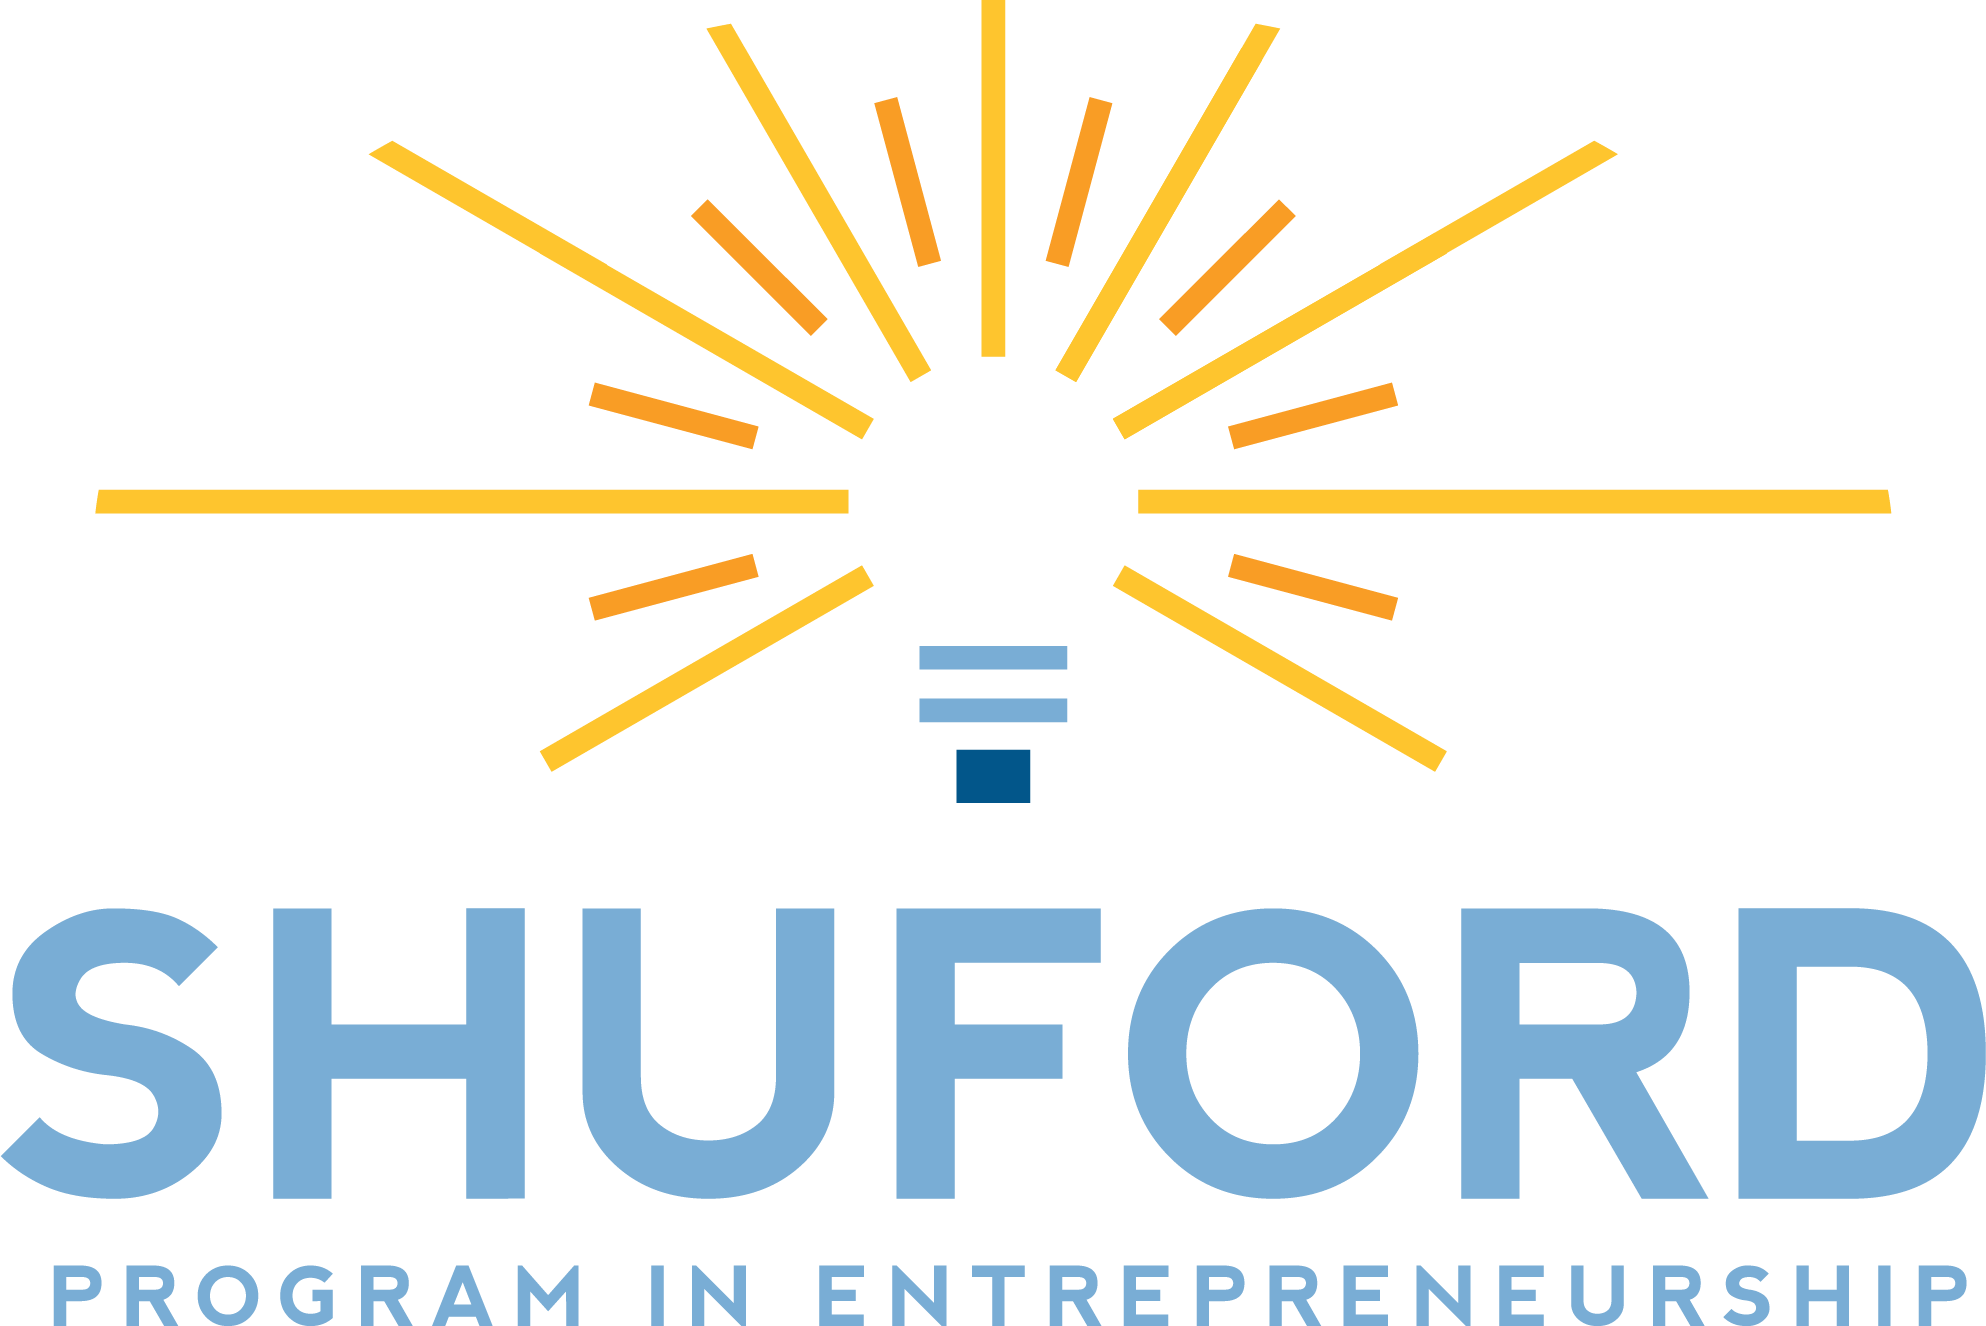 The Shuford Program in Entrepreneurship